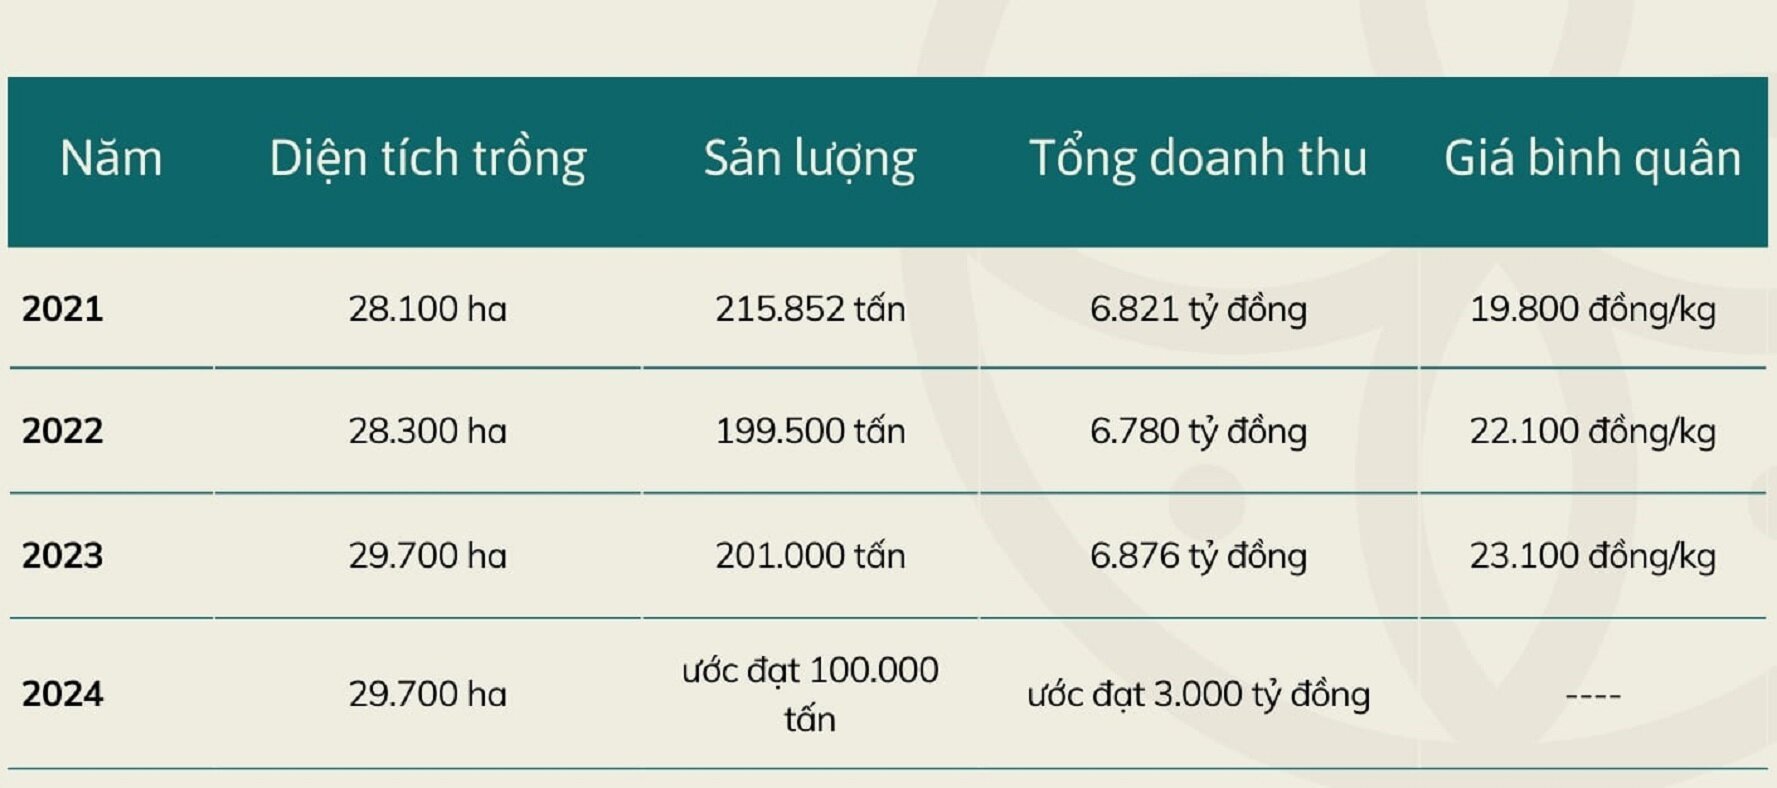 Mùa vải buồn ở Bắc Giang, mất nghìn tỷ đồng vì cây ‘chột’ hoa - 7